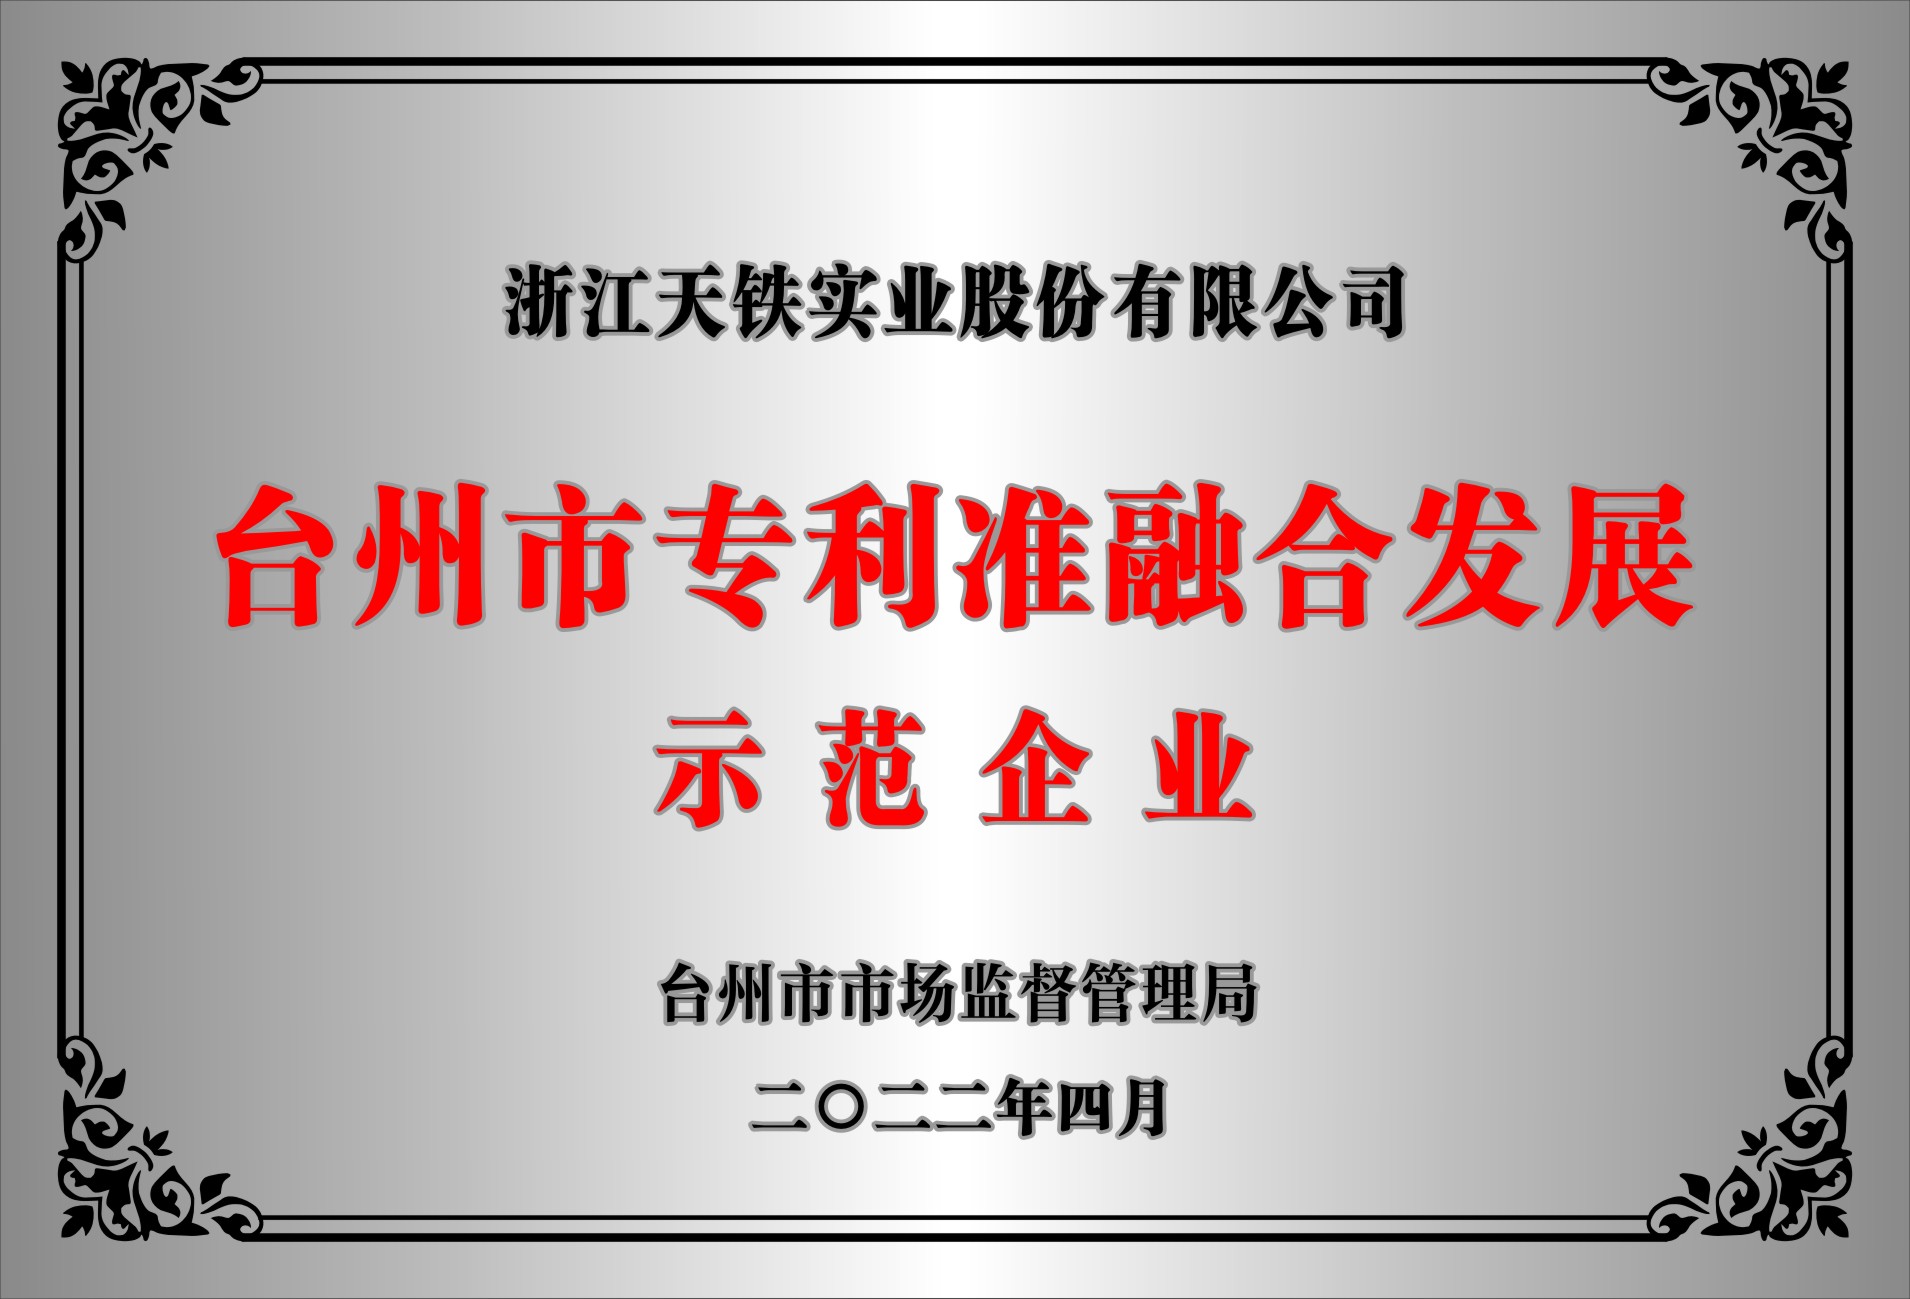 台州市专利标准融合发展示范企业